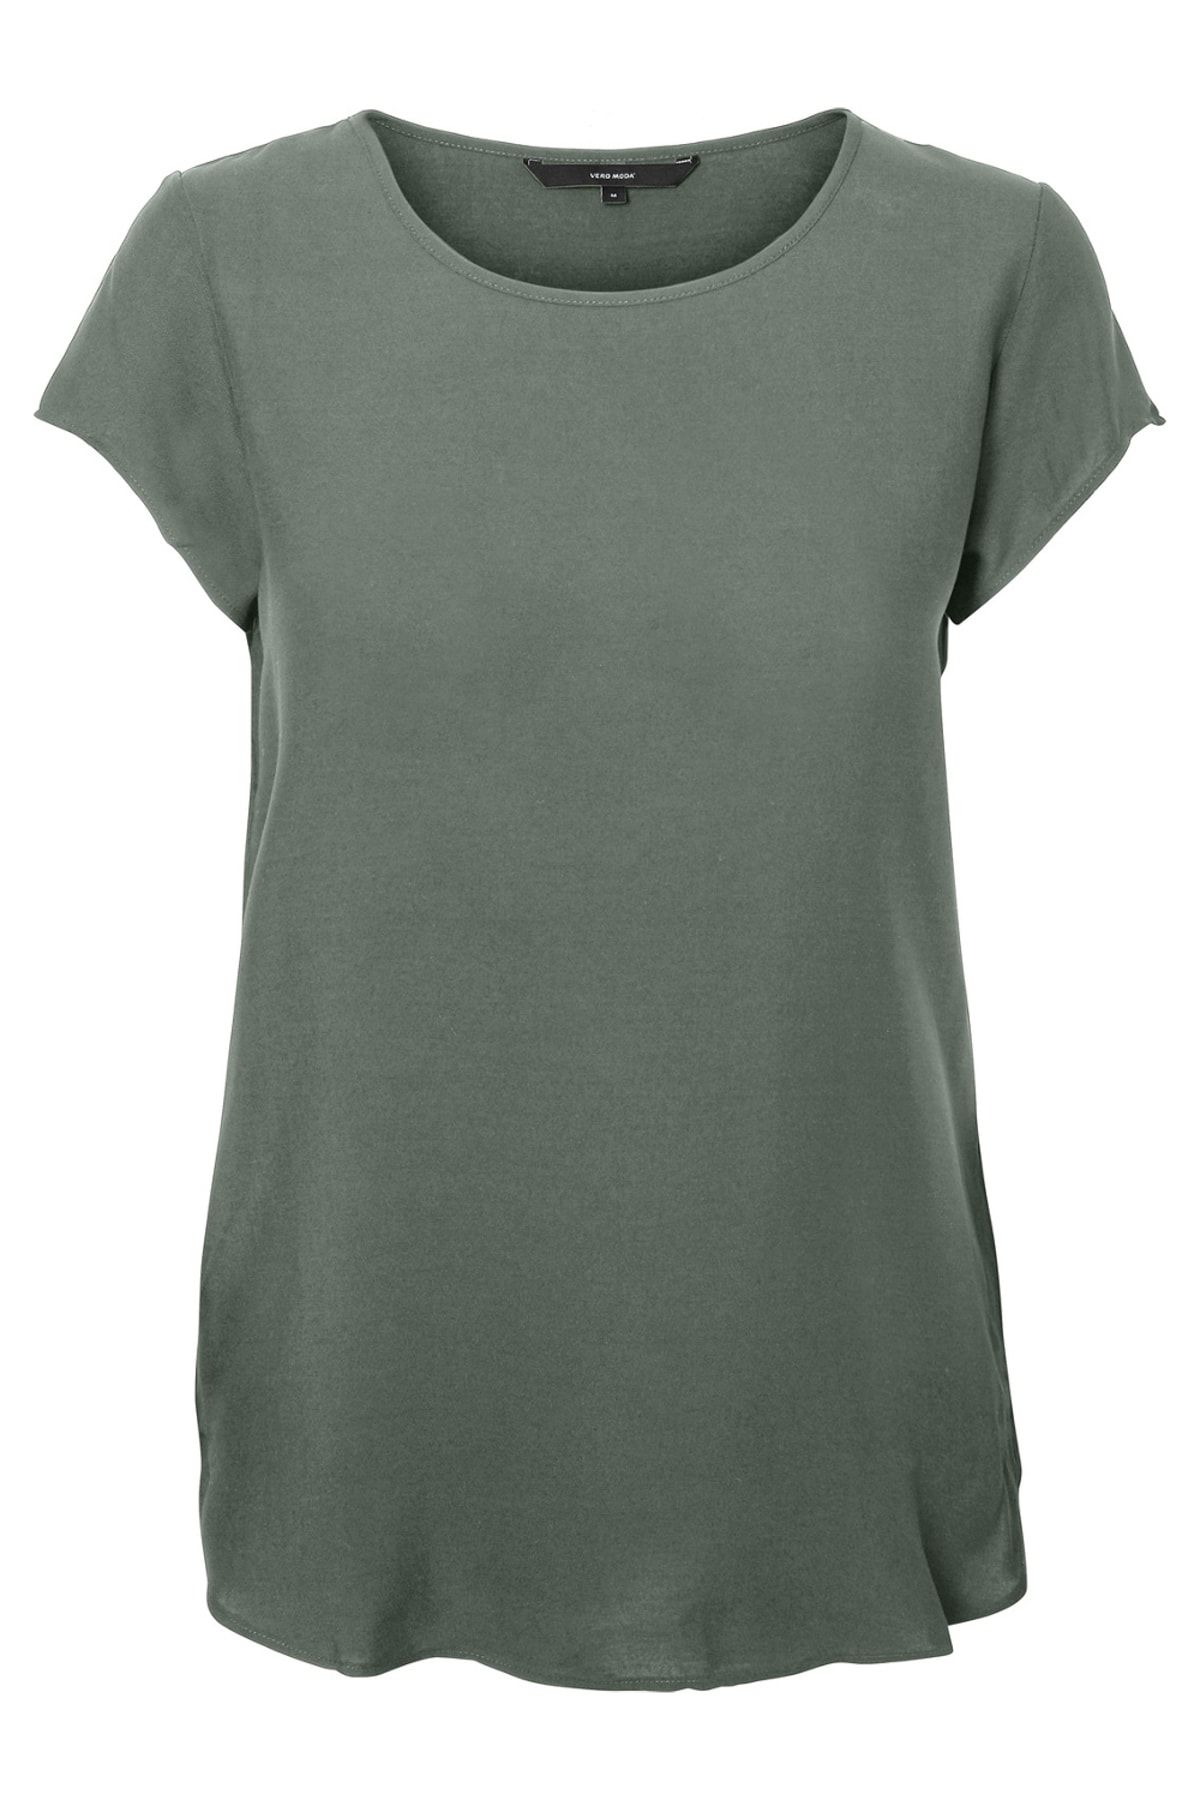 Vero Moda Kadın Yeşil-Defne Kısa Kollu Viskon T-Shirt 10104030 BOCA 10104030